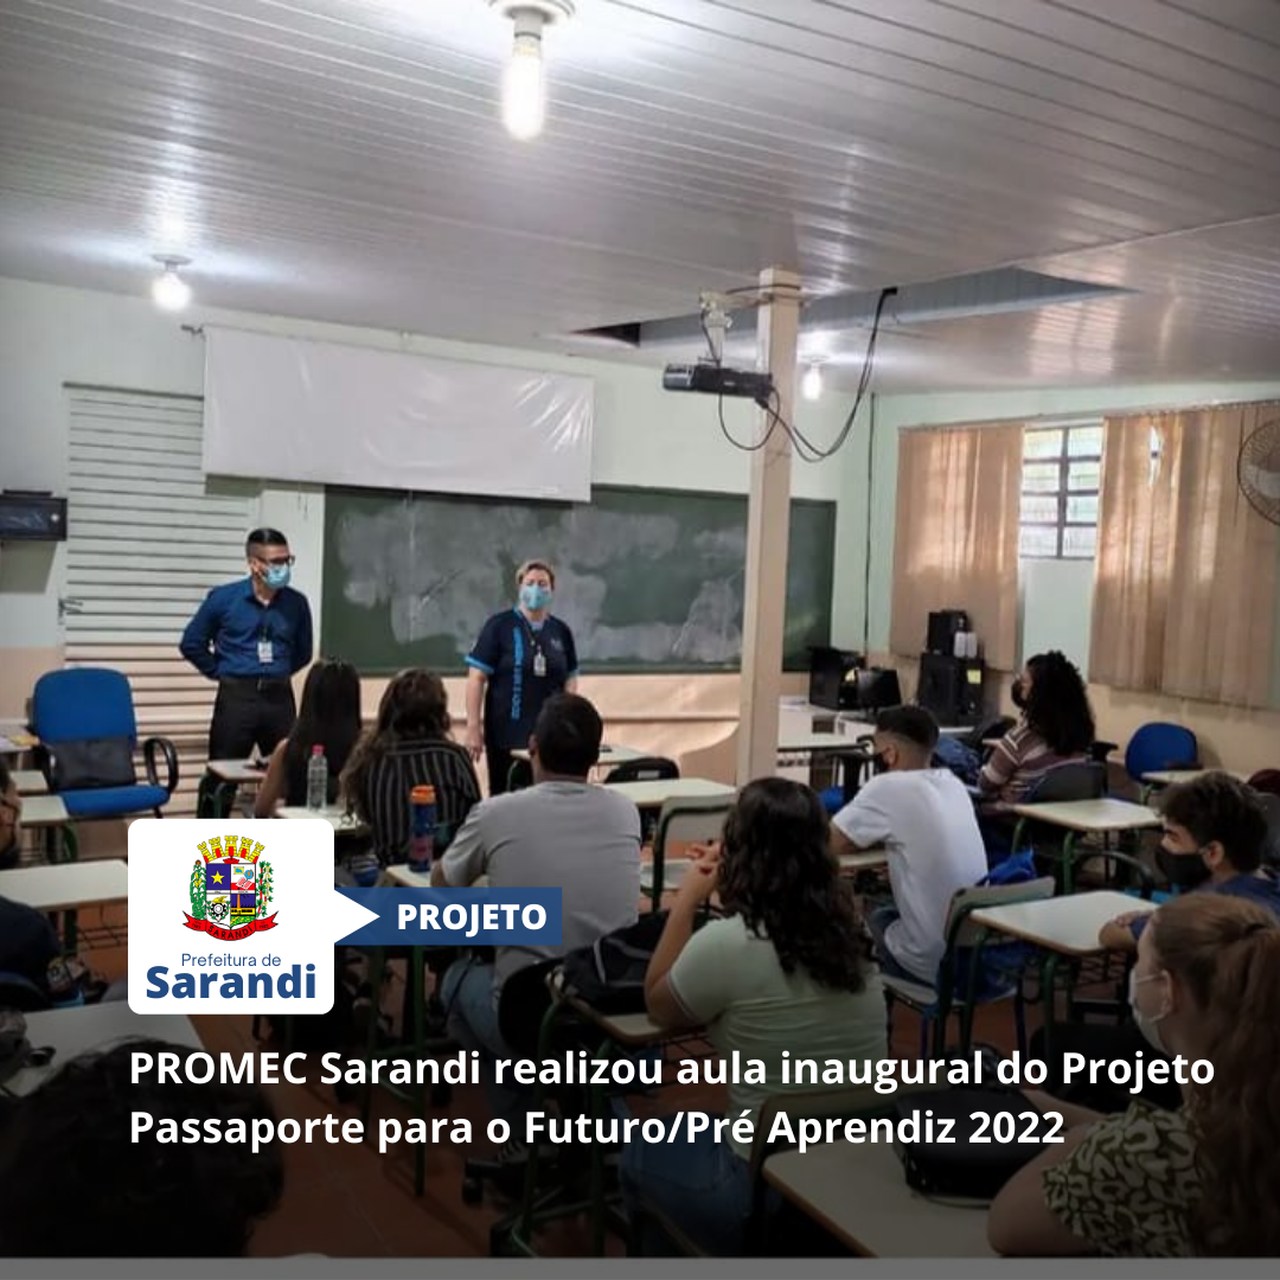 PROMEC Sarandi realizou aula inaugural do Projeto Passaporte para o Futuro/Pré Aprendiz 2022